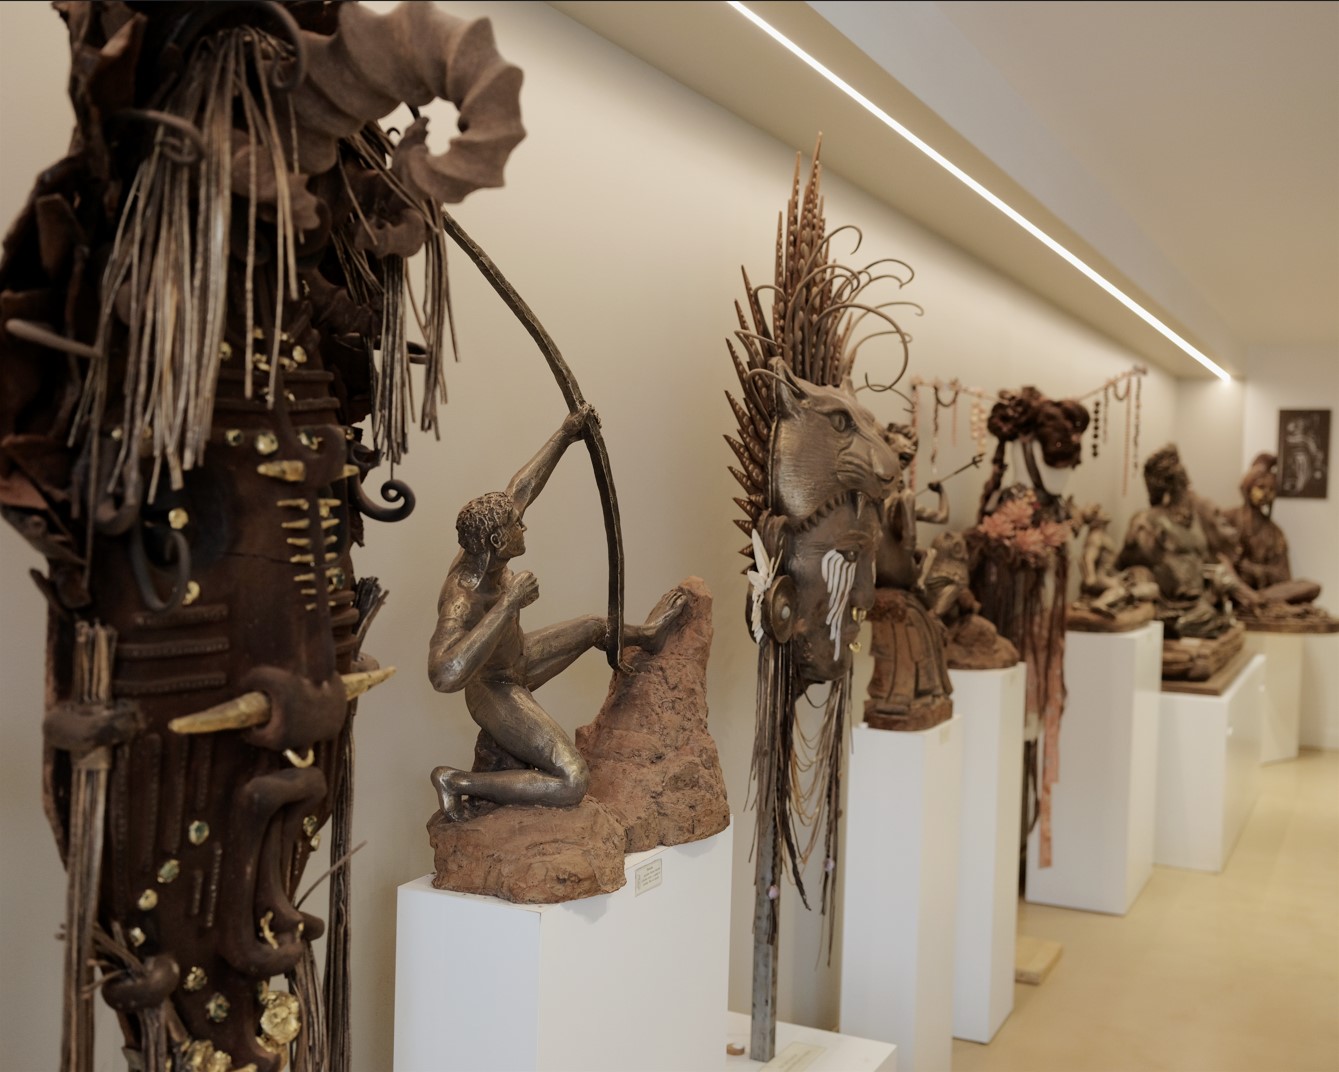 Aux Galeries du Cacao Fages, à Toulouse, on peut admirer une dizaine de sculptures, statues antiques et masques ethniques au réalisme saisissant. Tous sont confectionnés en chocolat ! LPM/Guillaume Rivière